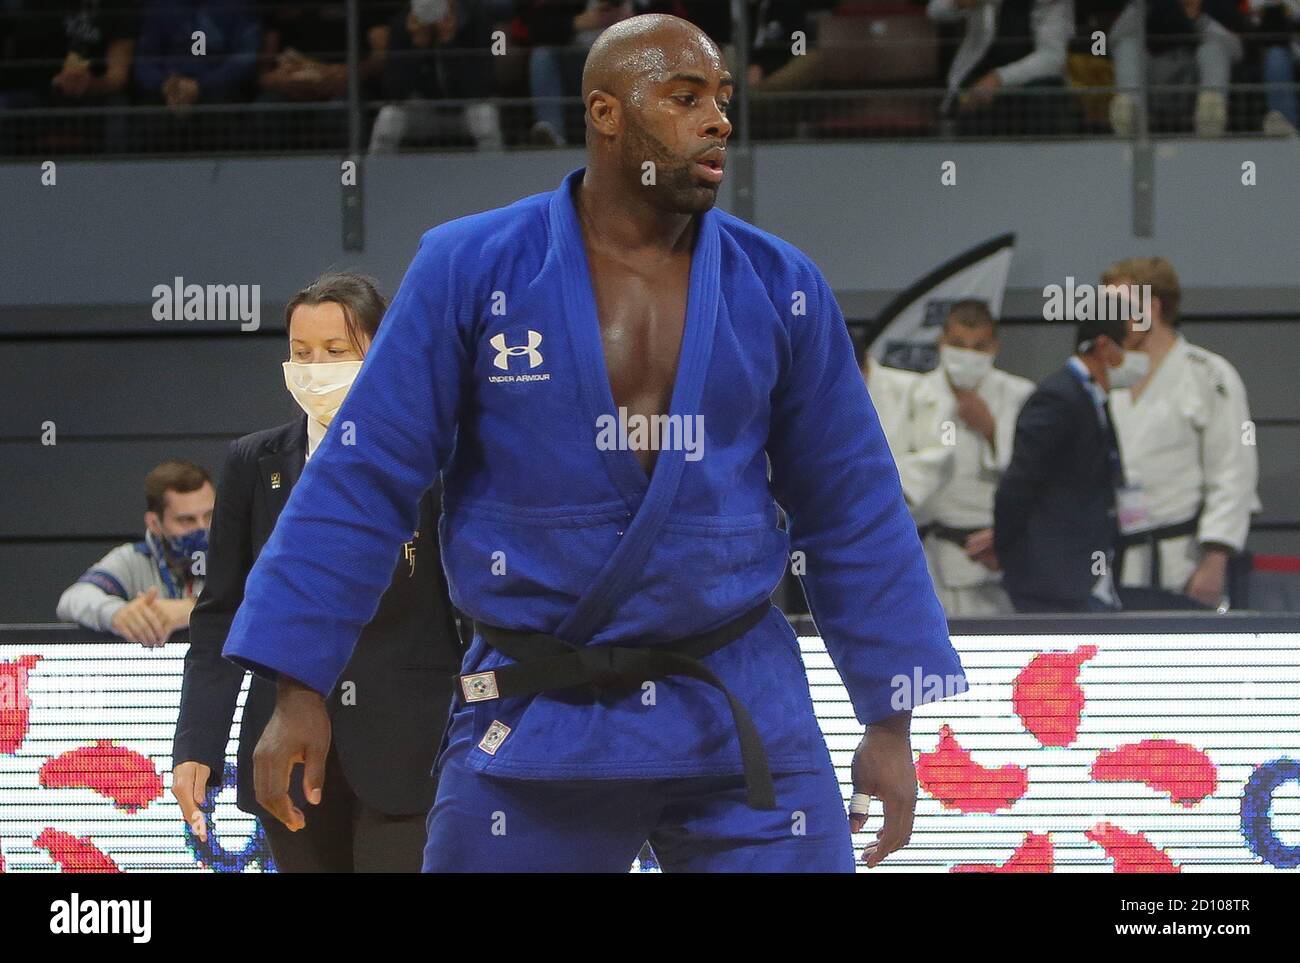 Teddy de PSG Judo durante el campeonato francés por equipos del club 2020 el